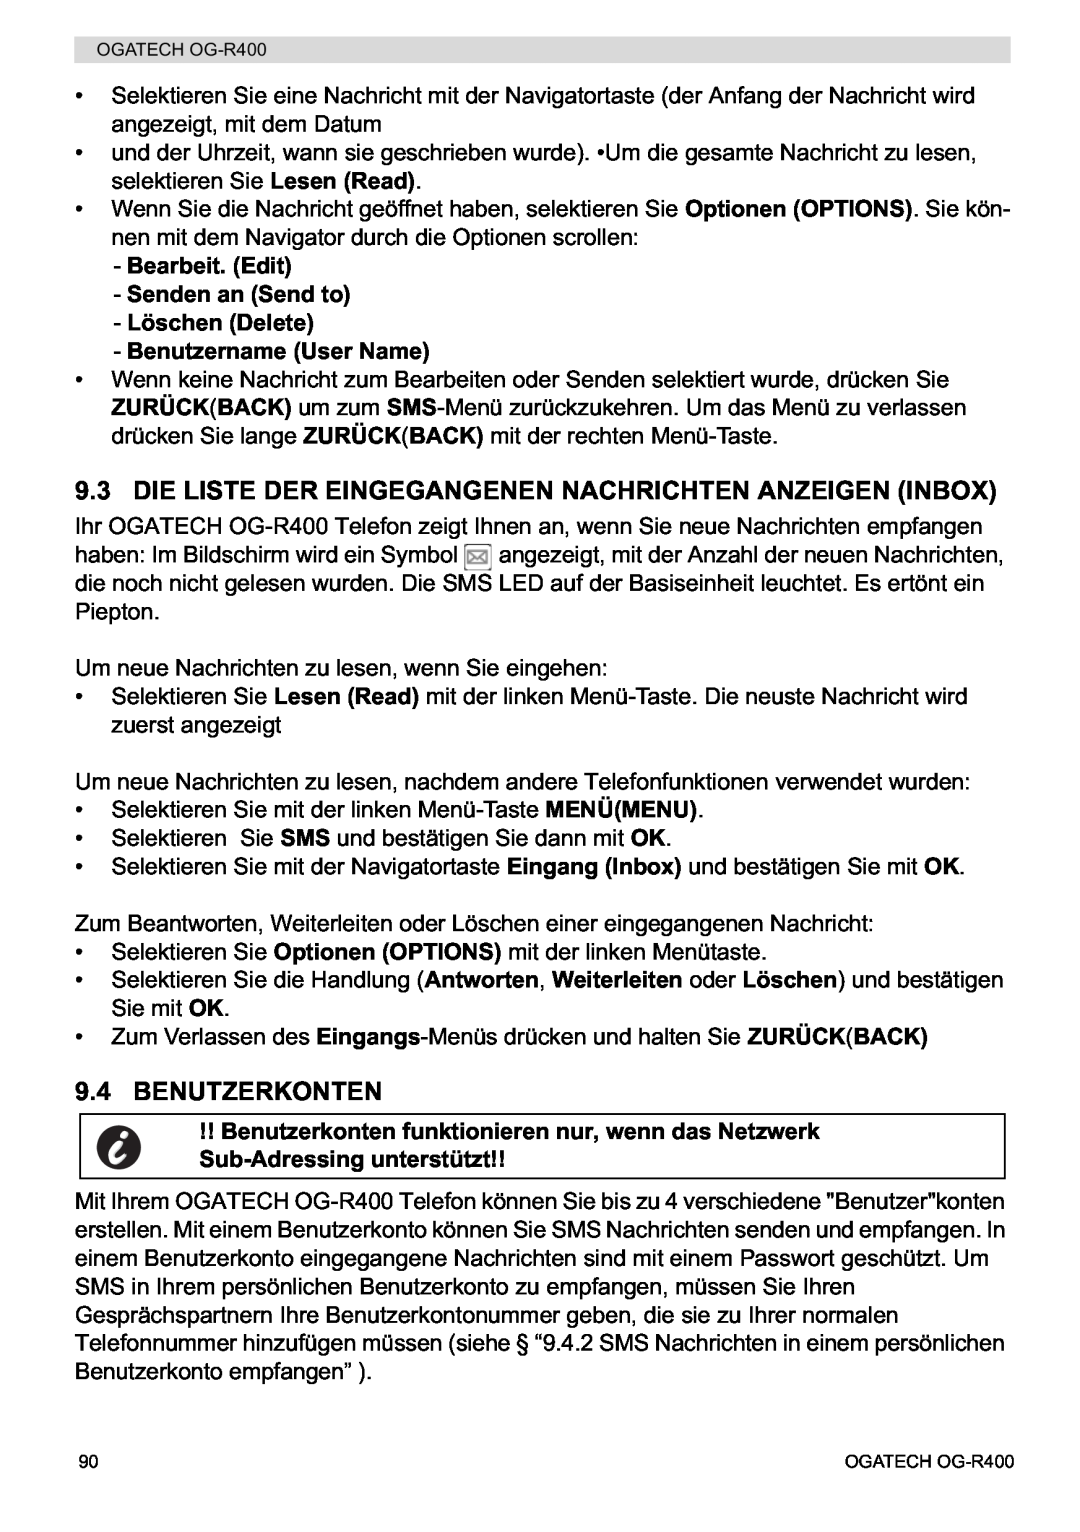 Topcom OG-R400 manual Die Liste Der Eingegangenen Nachrichten Anzeigen Inbox, Benutzerkonten, Benutzername User Name 